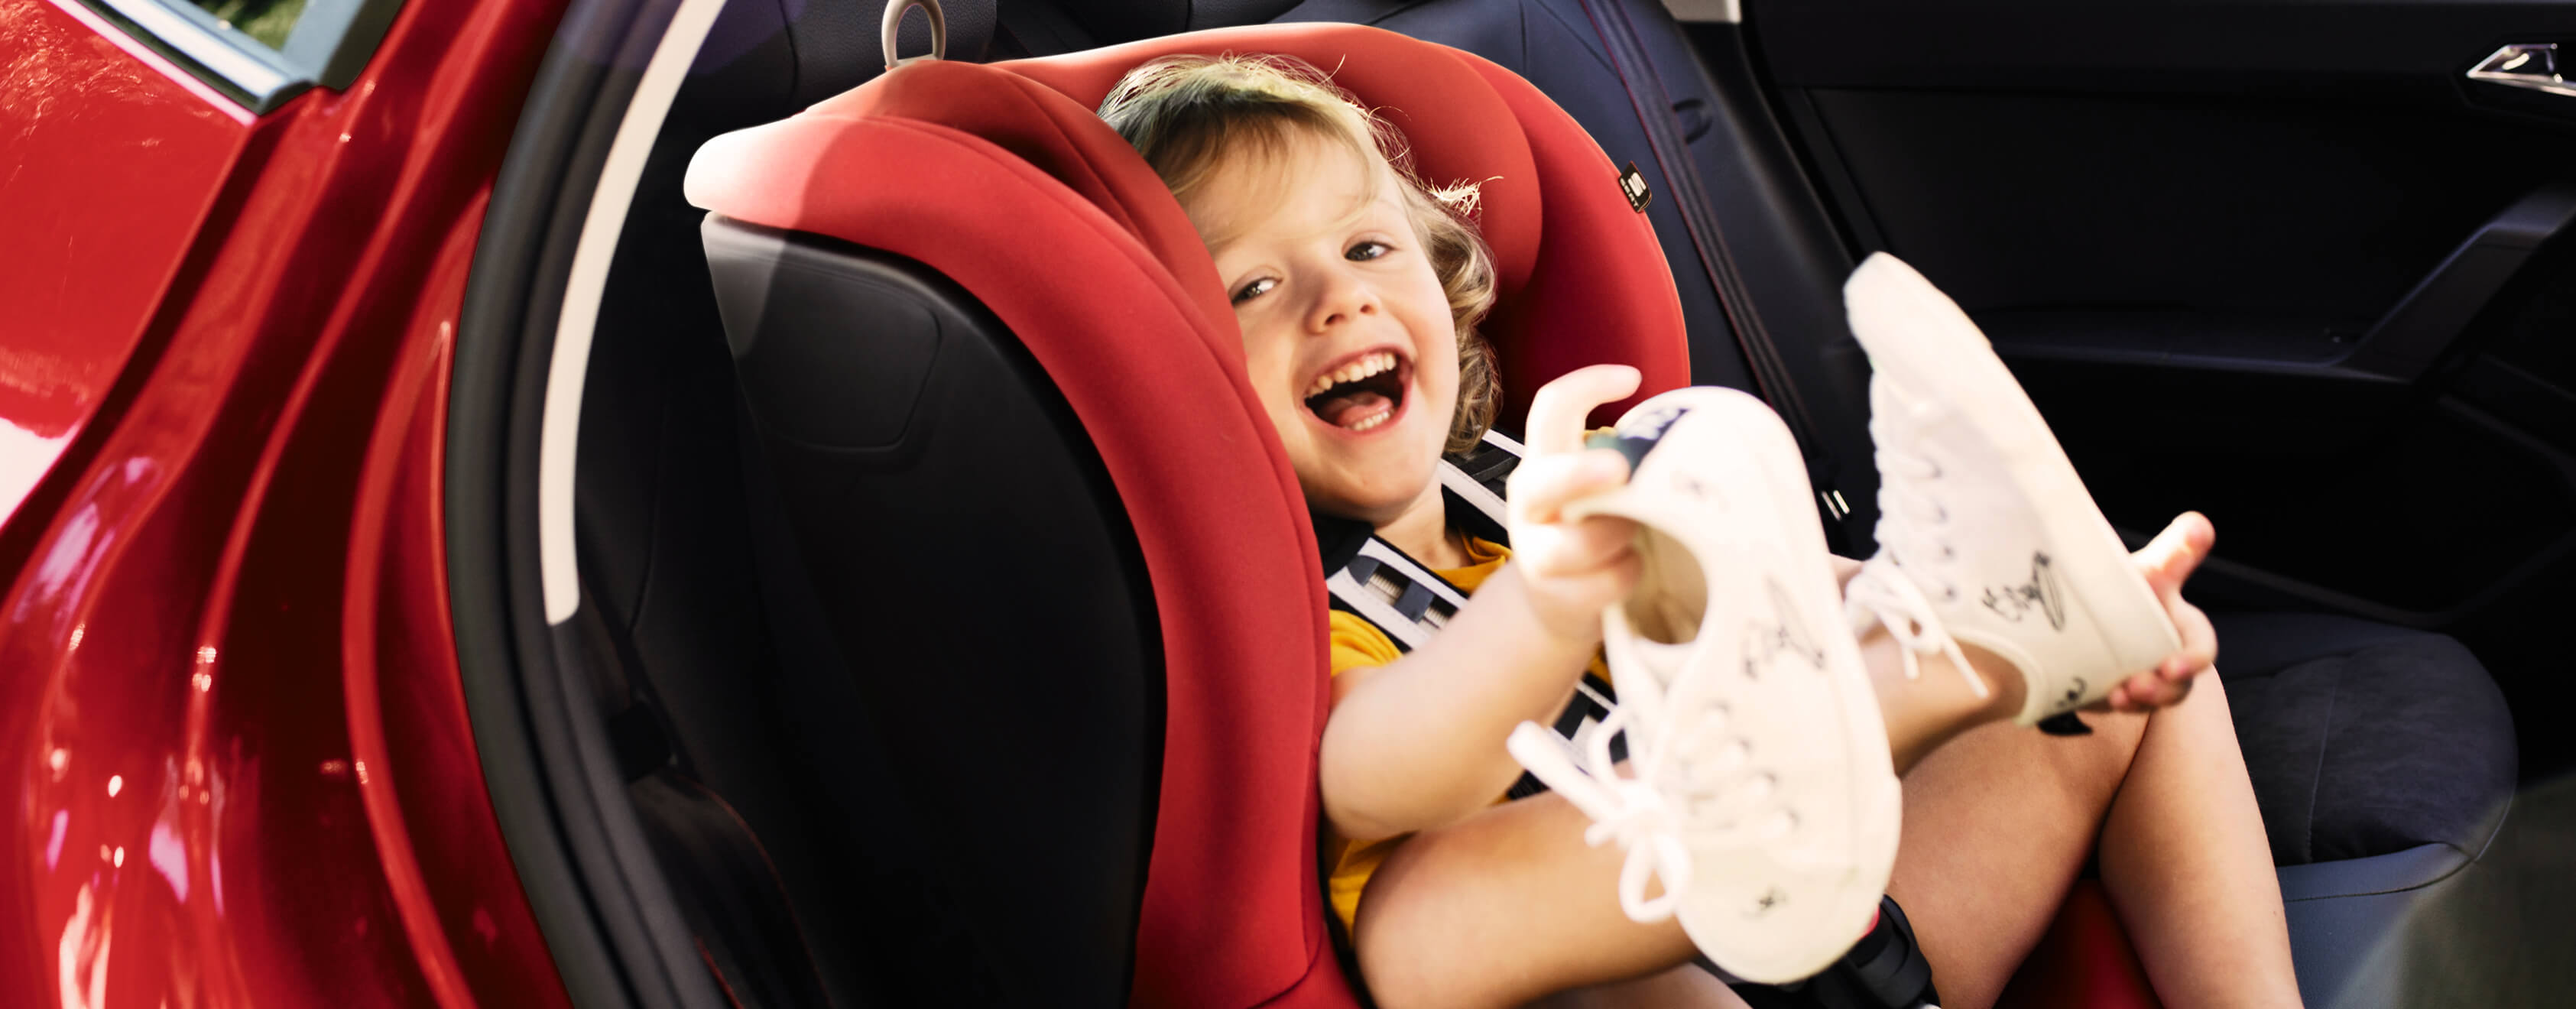 Servizi e manutenzione per vetture nuove SEAT – bambino sorridente sul seggiolino di una vettura SEAT nuova